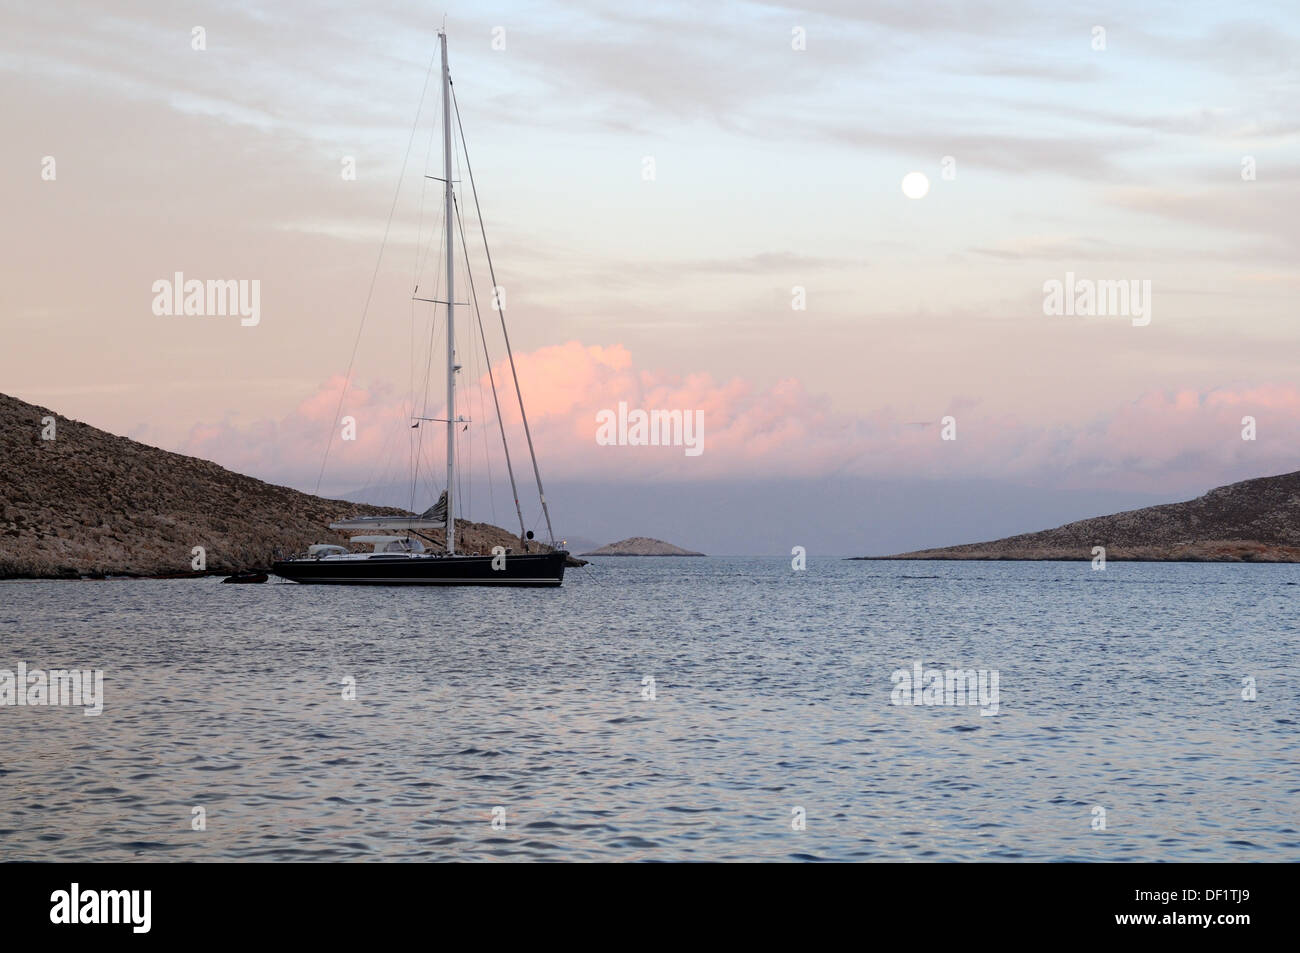 Un voilier amarré dans le port de Port Halki Chalki Emporio au coucher du soleil avec la Lune se levant sur la Mer Égée Grèce Dodecanses Banque D'Images